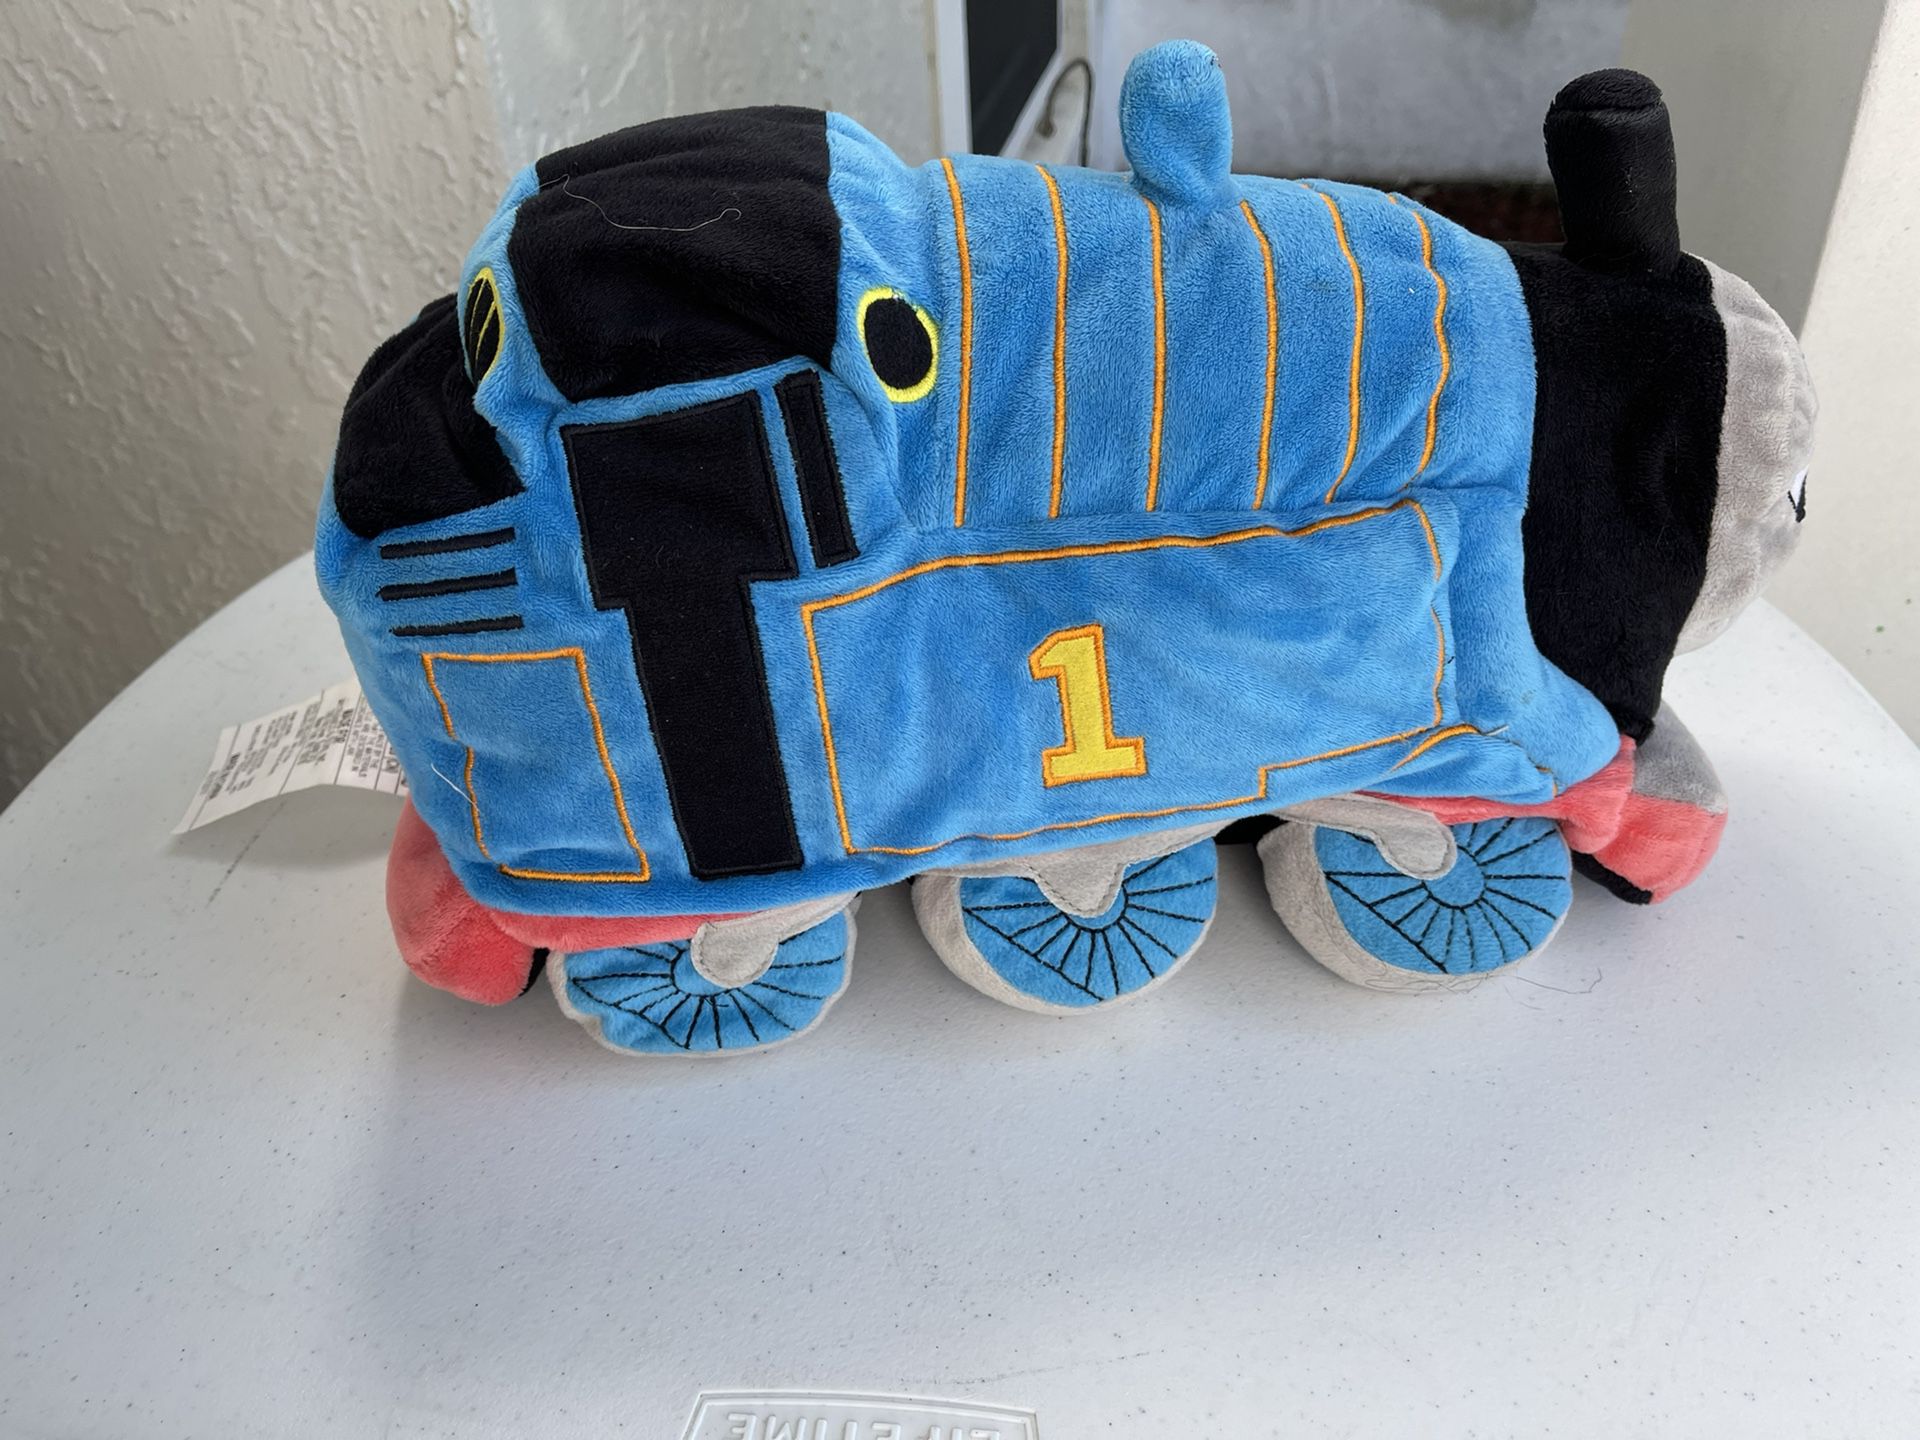 Thomas the Train Plush Toy Stuffed Animal